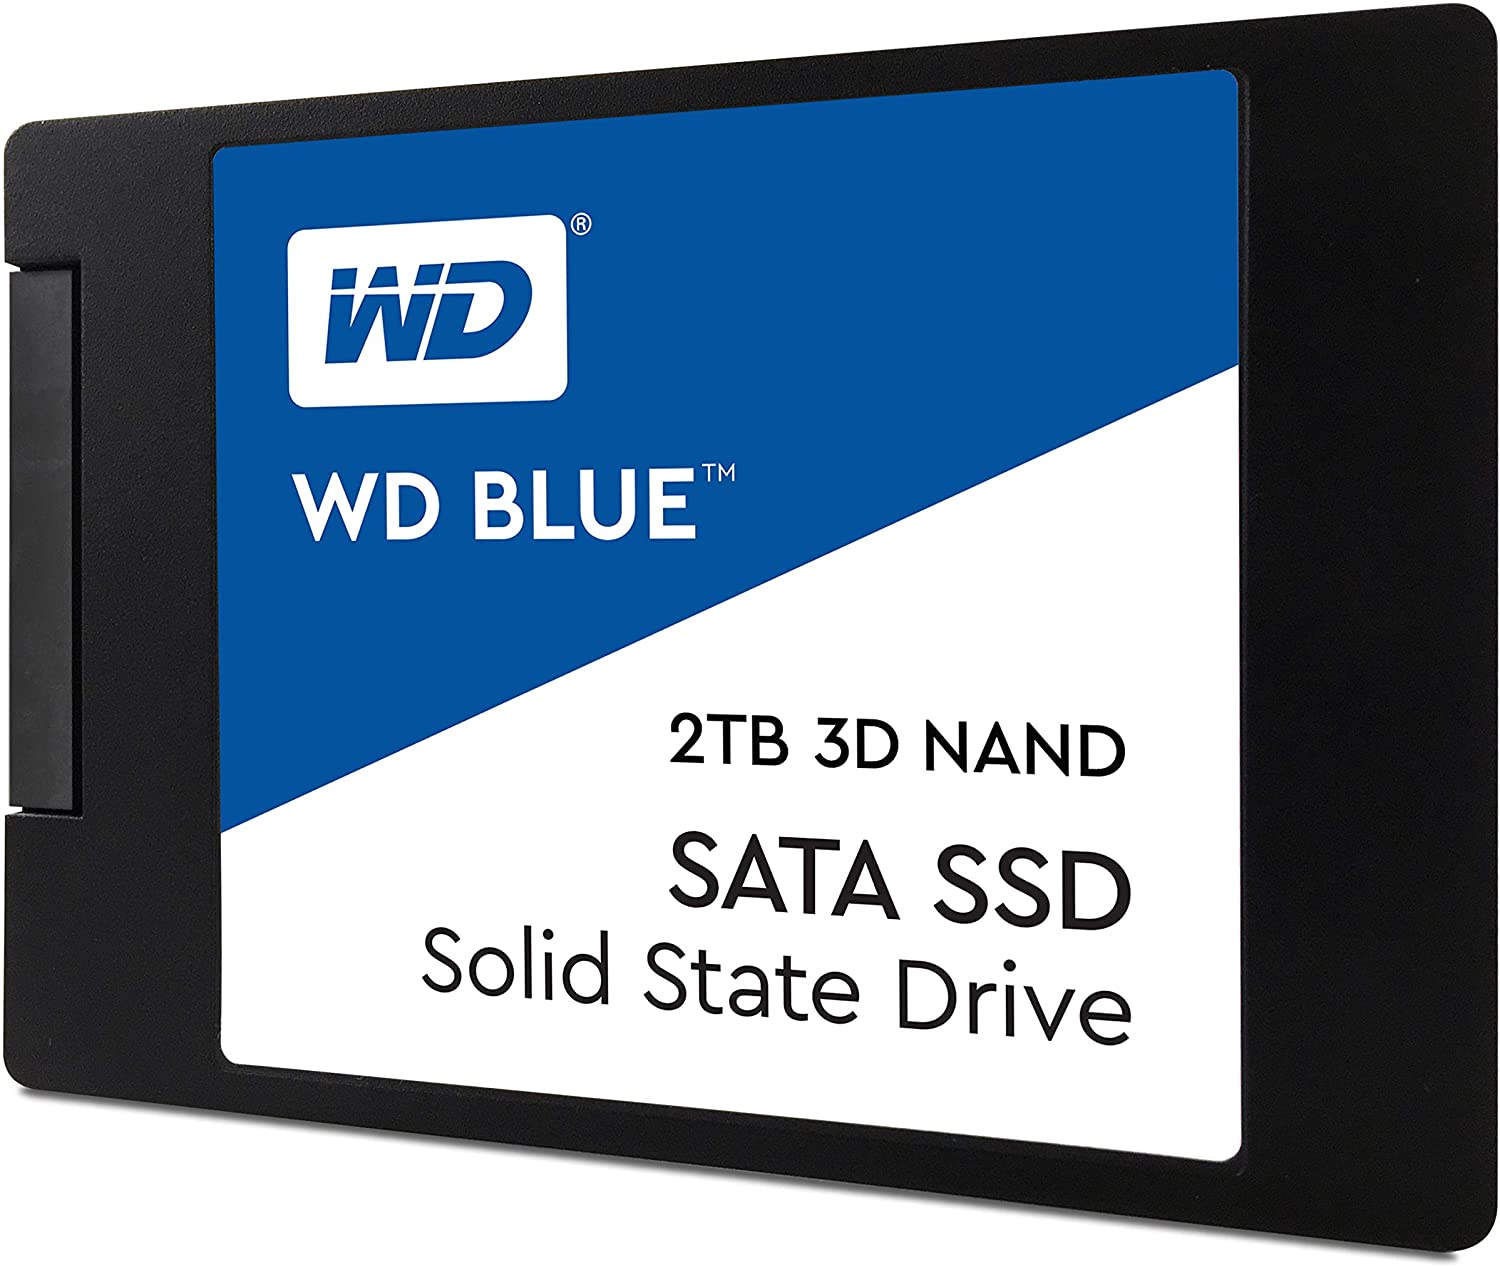 2TB, SATA III, WD Blue, TLC, Internal SSD, for $183.95 ($91.98/TB) at Amazon